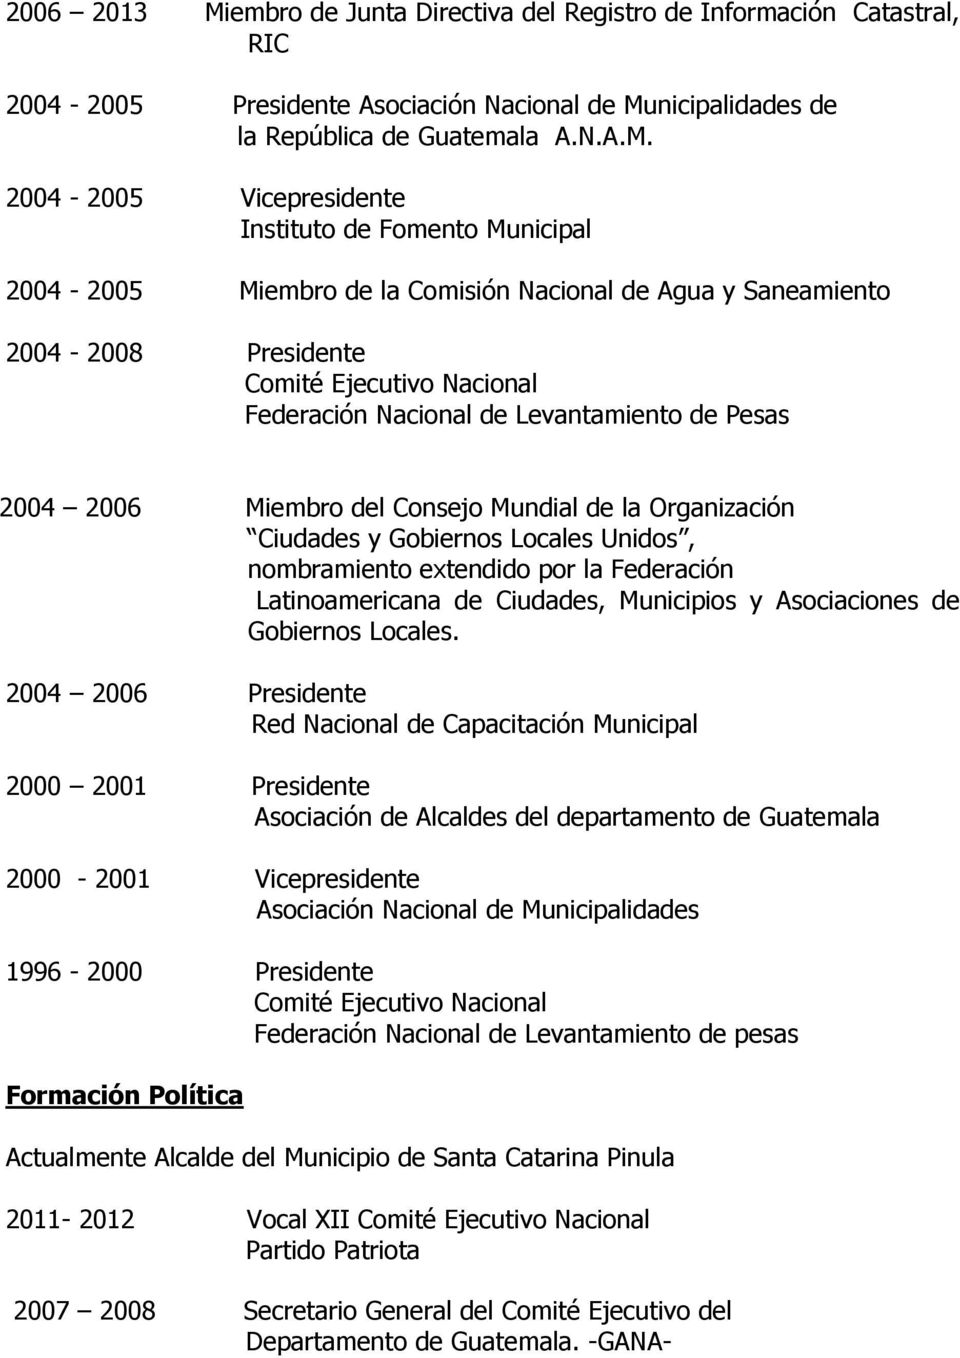 nicipalidades de la República de Guatemala A.N.A.M.